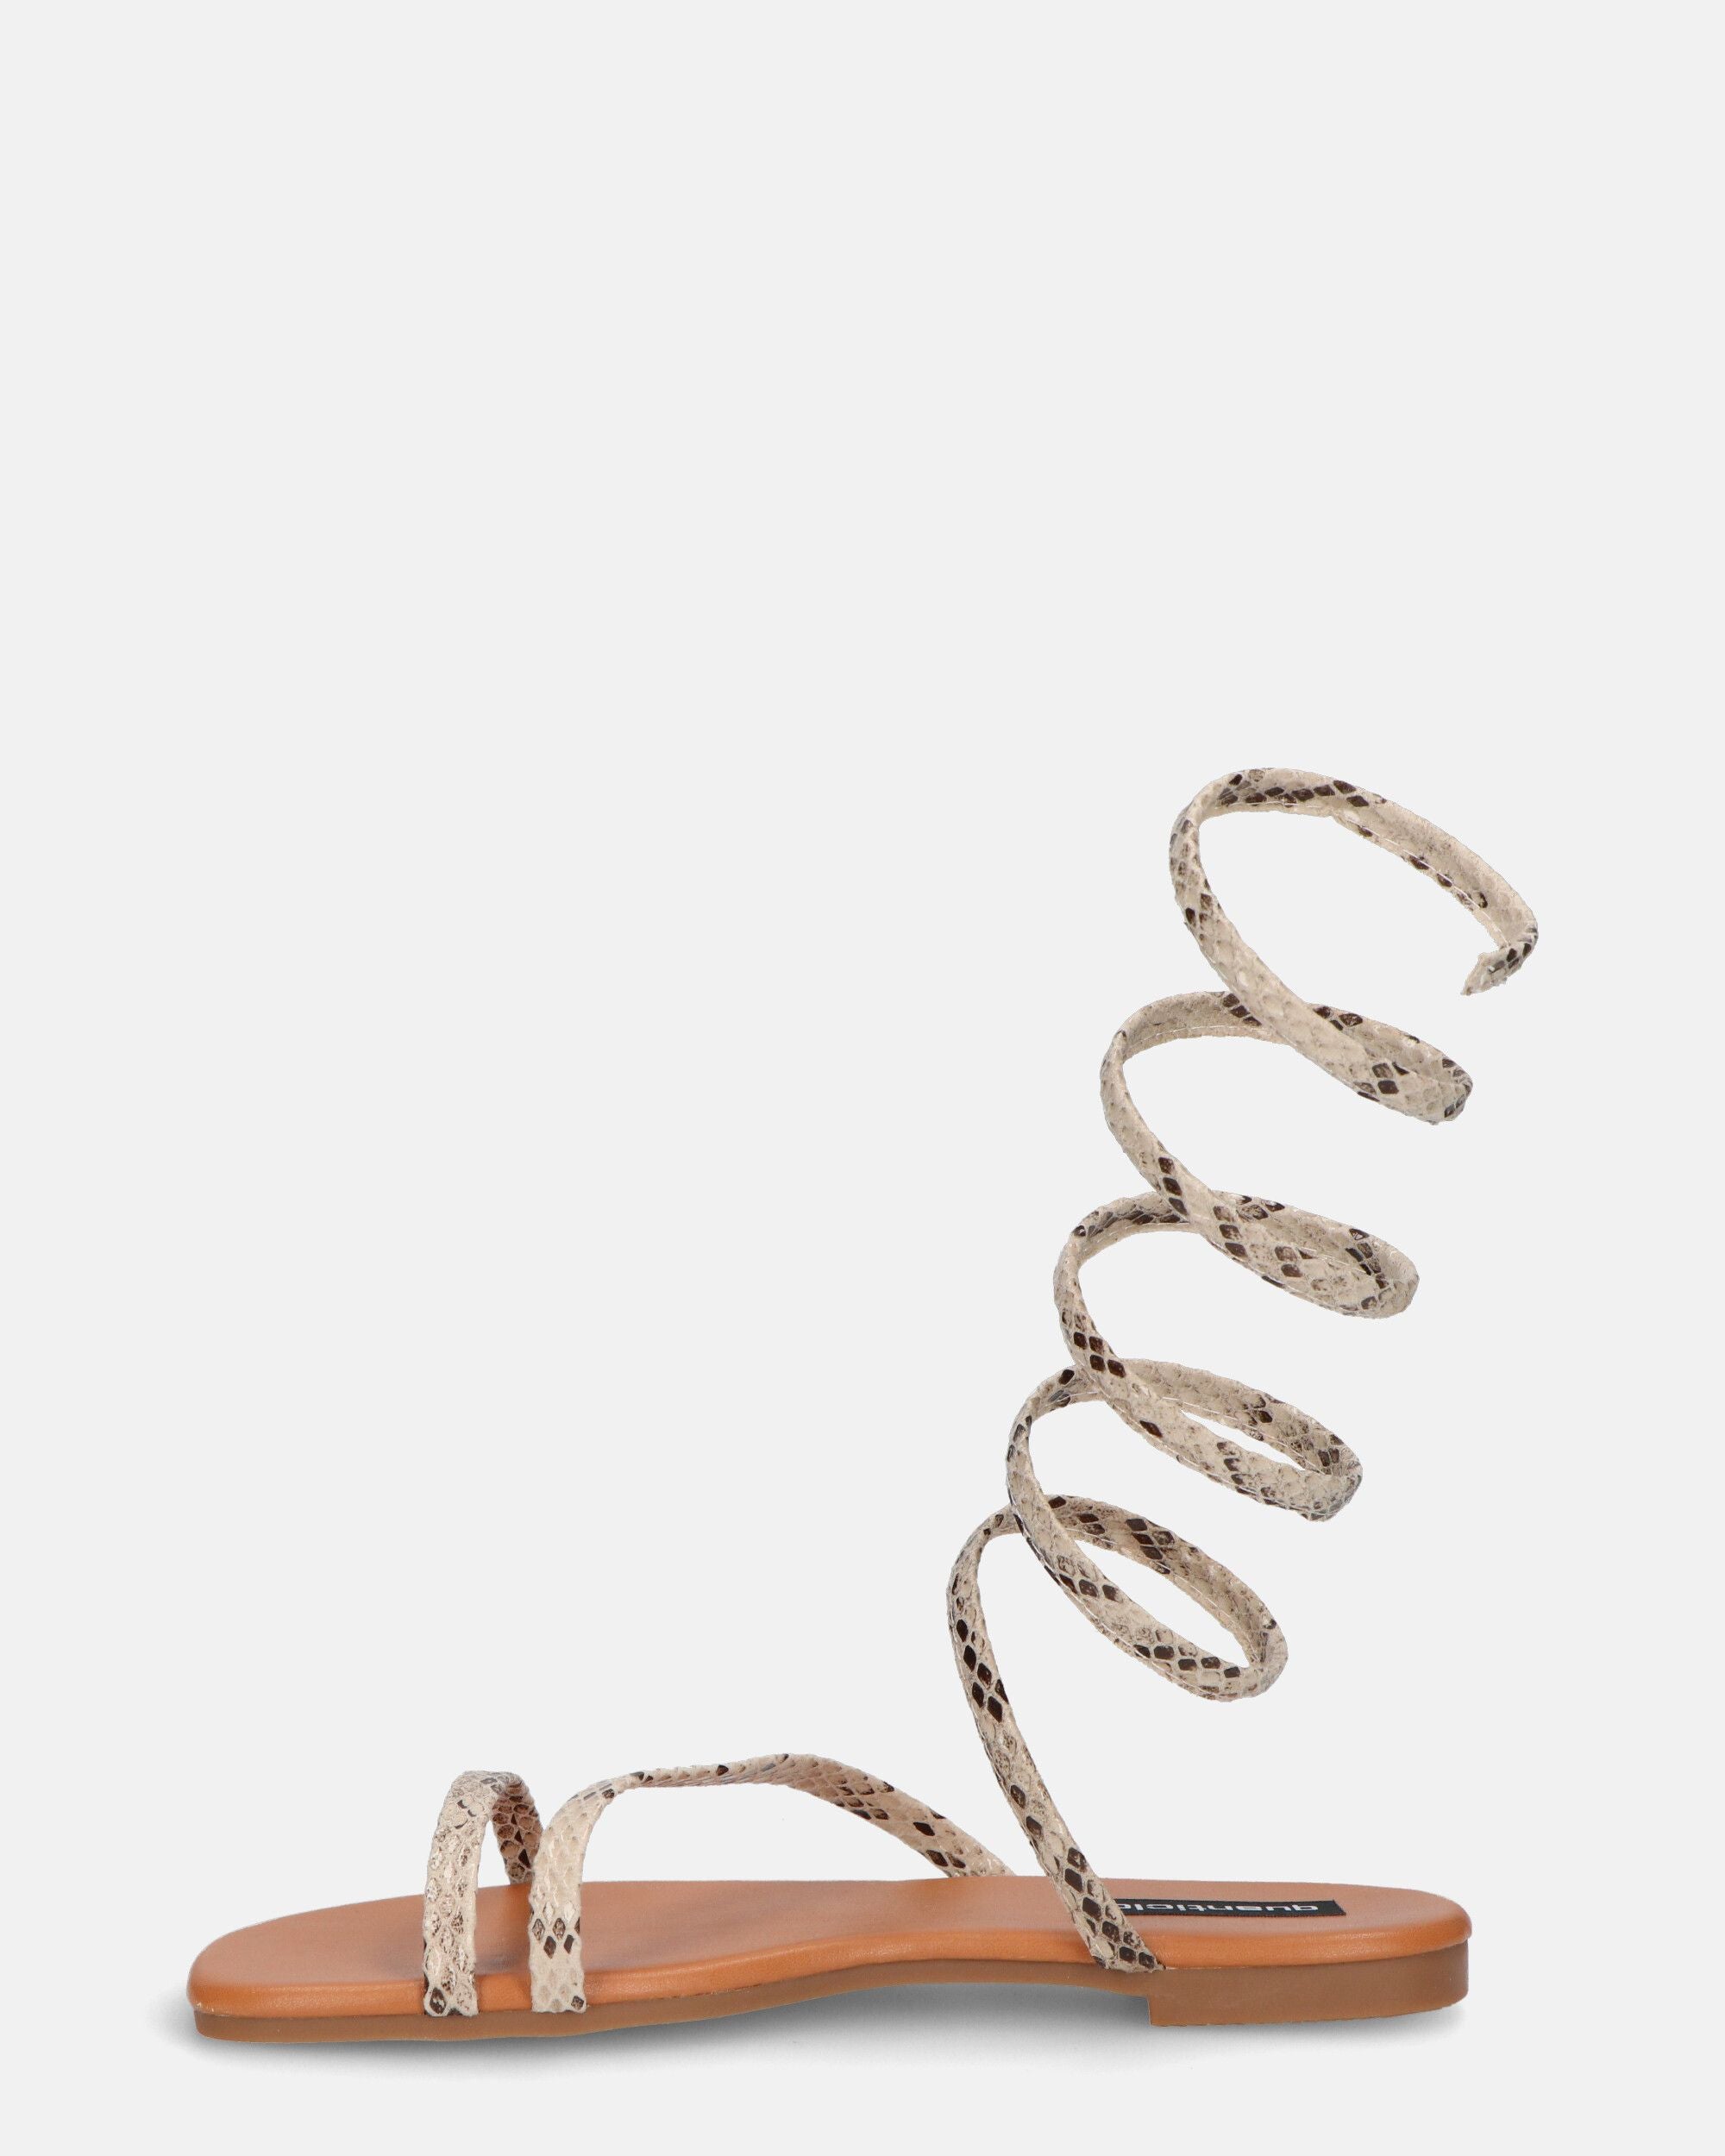 SIENNA - sandali con suola marrone e spirale pitonata